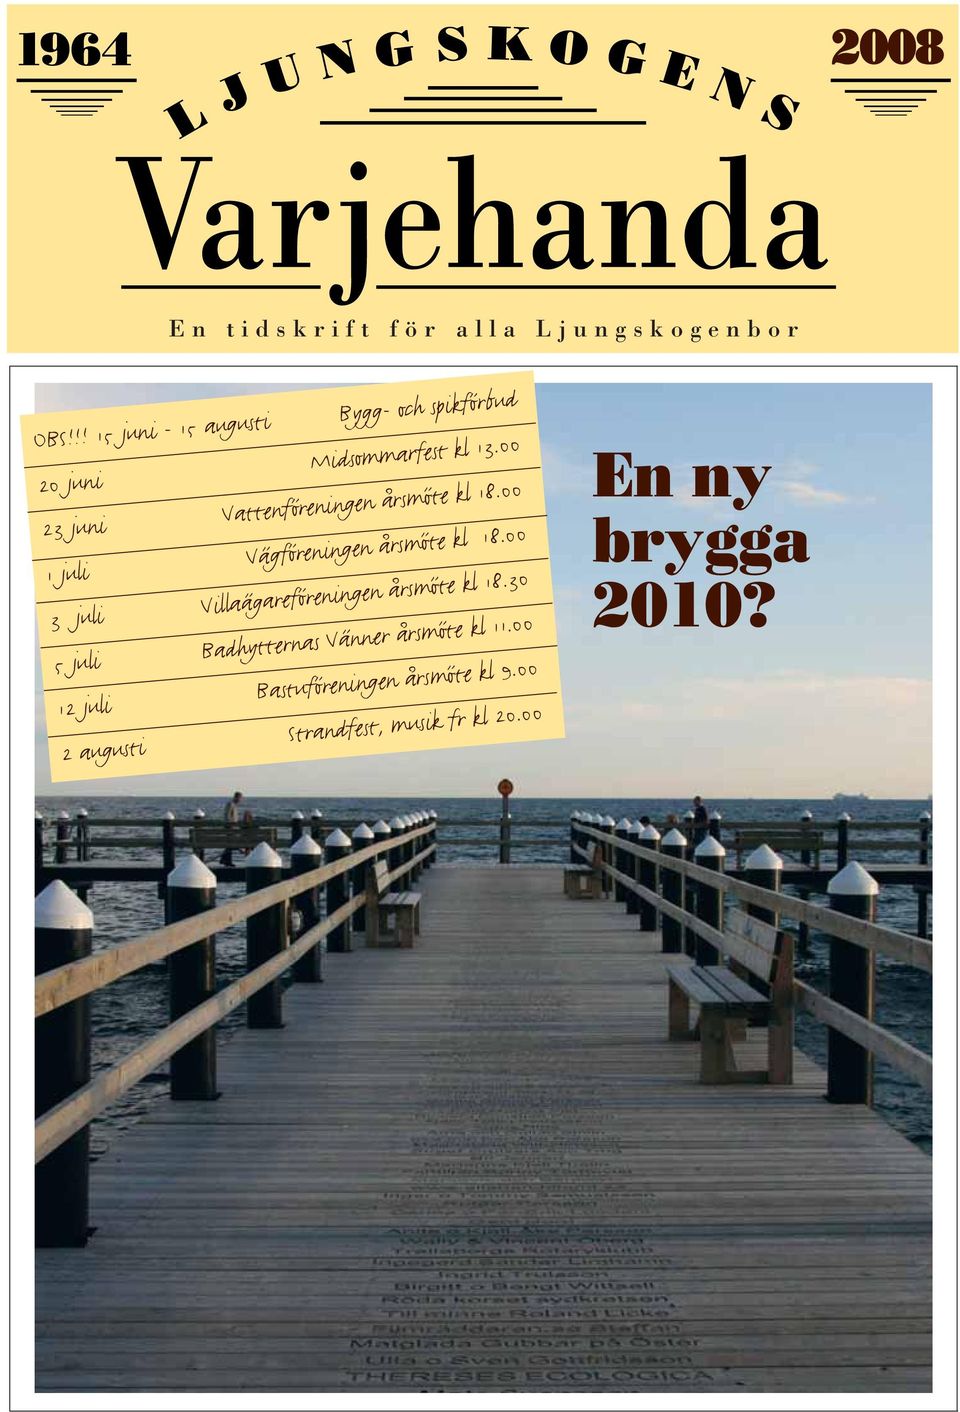 00 23 juni Vattenföreningen årsmöte kl 18.00 1 juli Vägföreningen årsmöte kl 18.